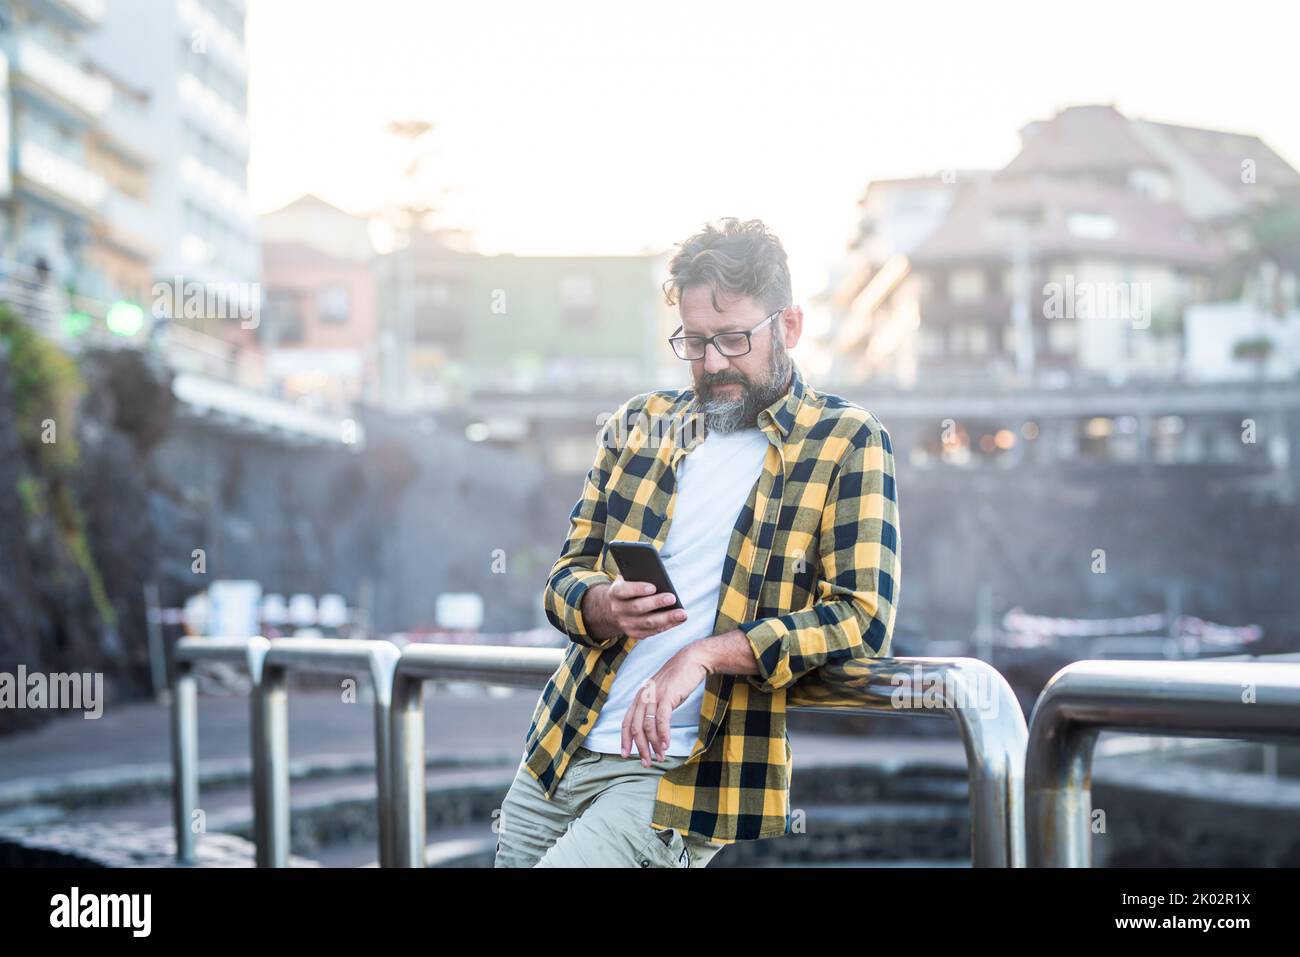 Junge Erwachsene reifen kaukasischen Mann mit Handy im Freien mit Wireless Internet kostenlose Verbindung. Männliche Menschen nutzen an sonnigen Tagen in der Stadt ein Mobilfunkgerät. Stadtgebäude im Hintergrund Stockfoto